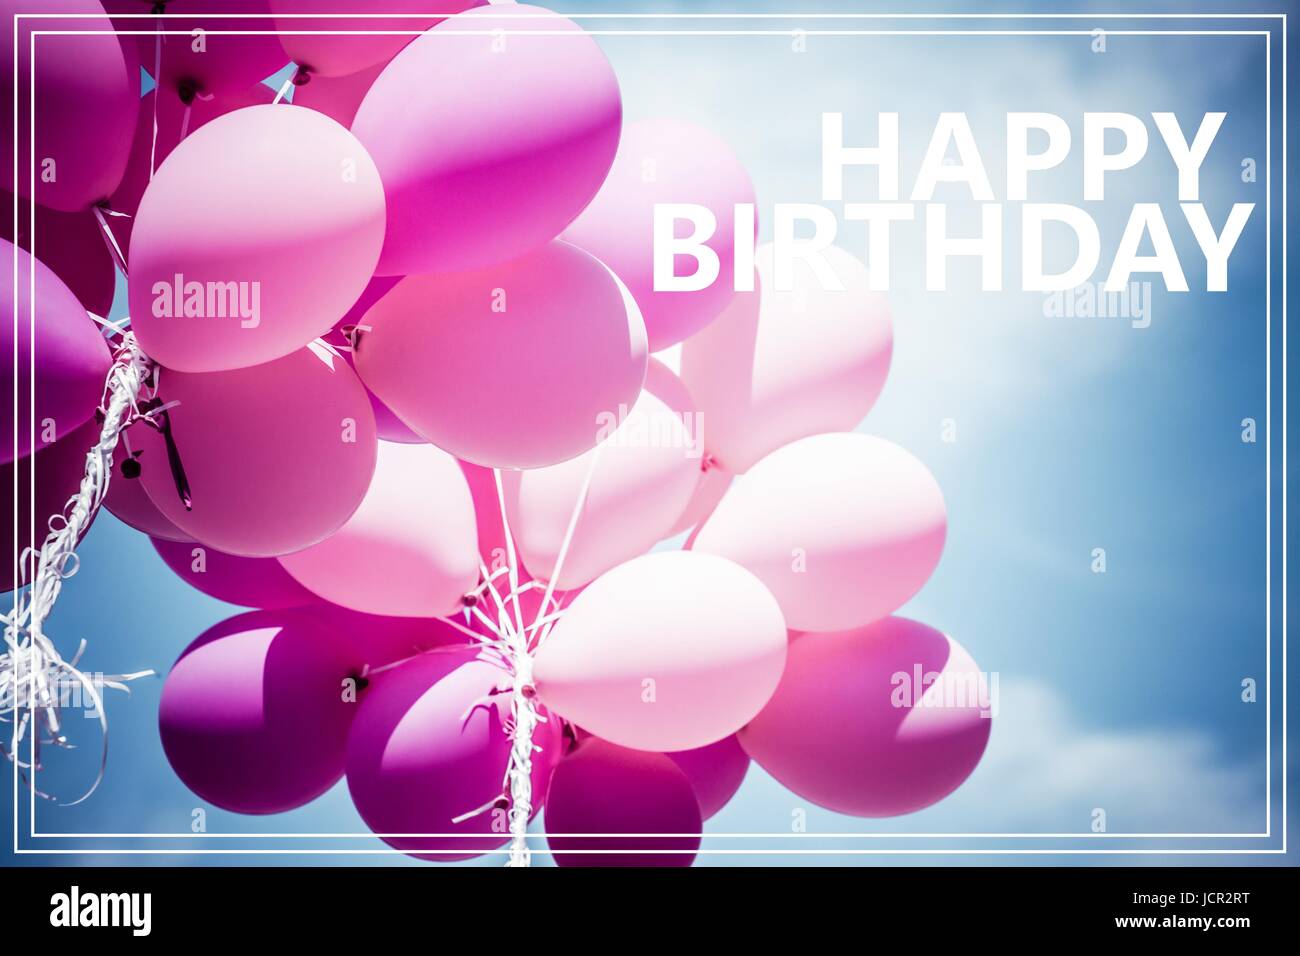 Parola felice compleanno su palloncini rosa e blu sullo sfondo del